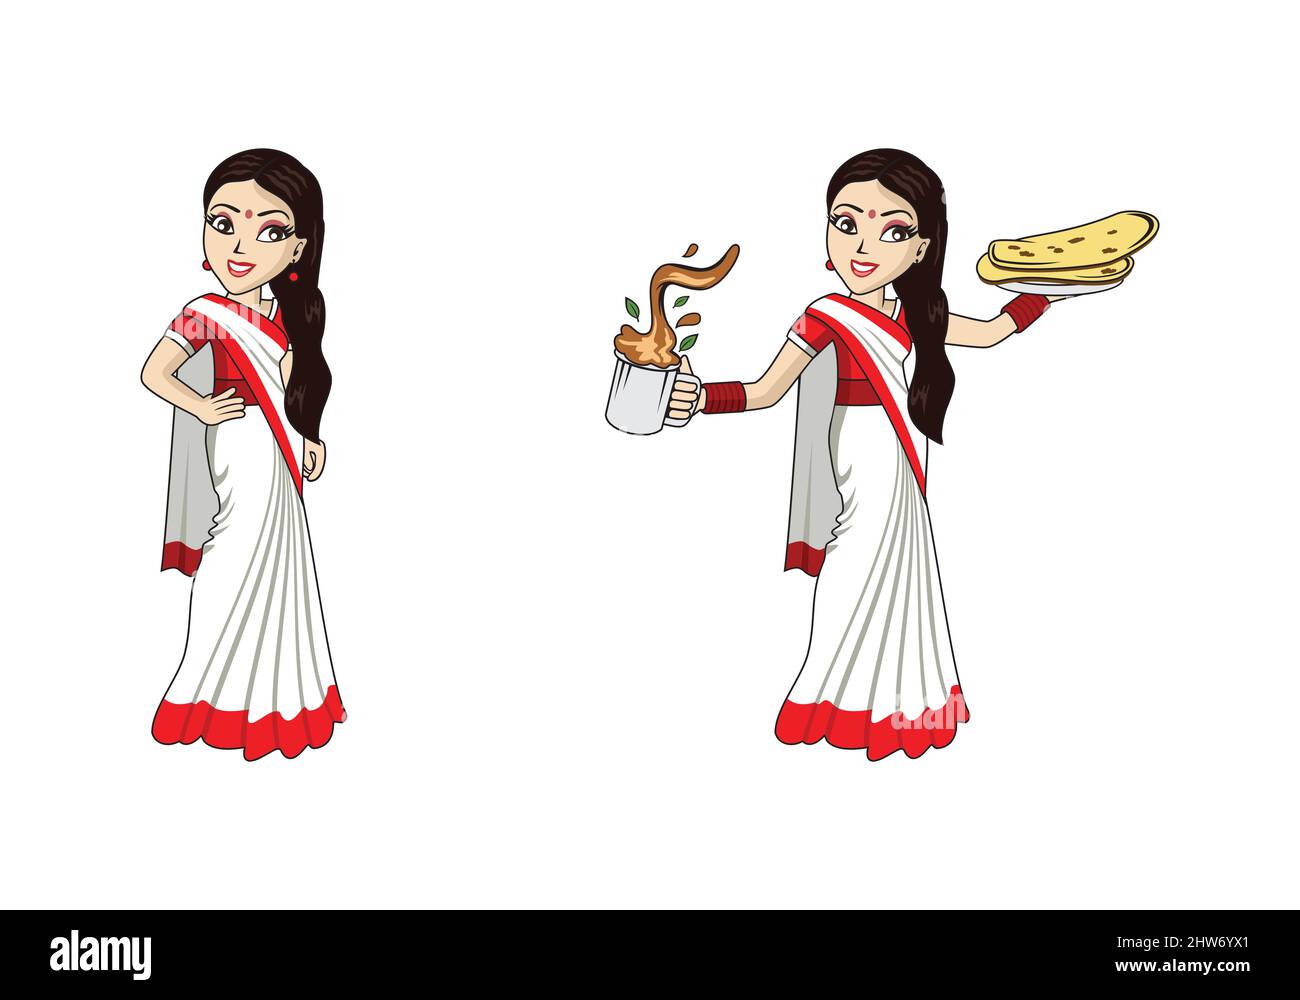 Schöne indische Frauen Charakter Design Illustration Vektor eps Format , geeignet für Ihre Design-Bedürfnisse, Logo, Illustration, Animation, etc. Stock Vektor